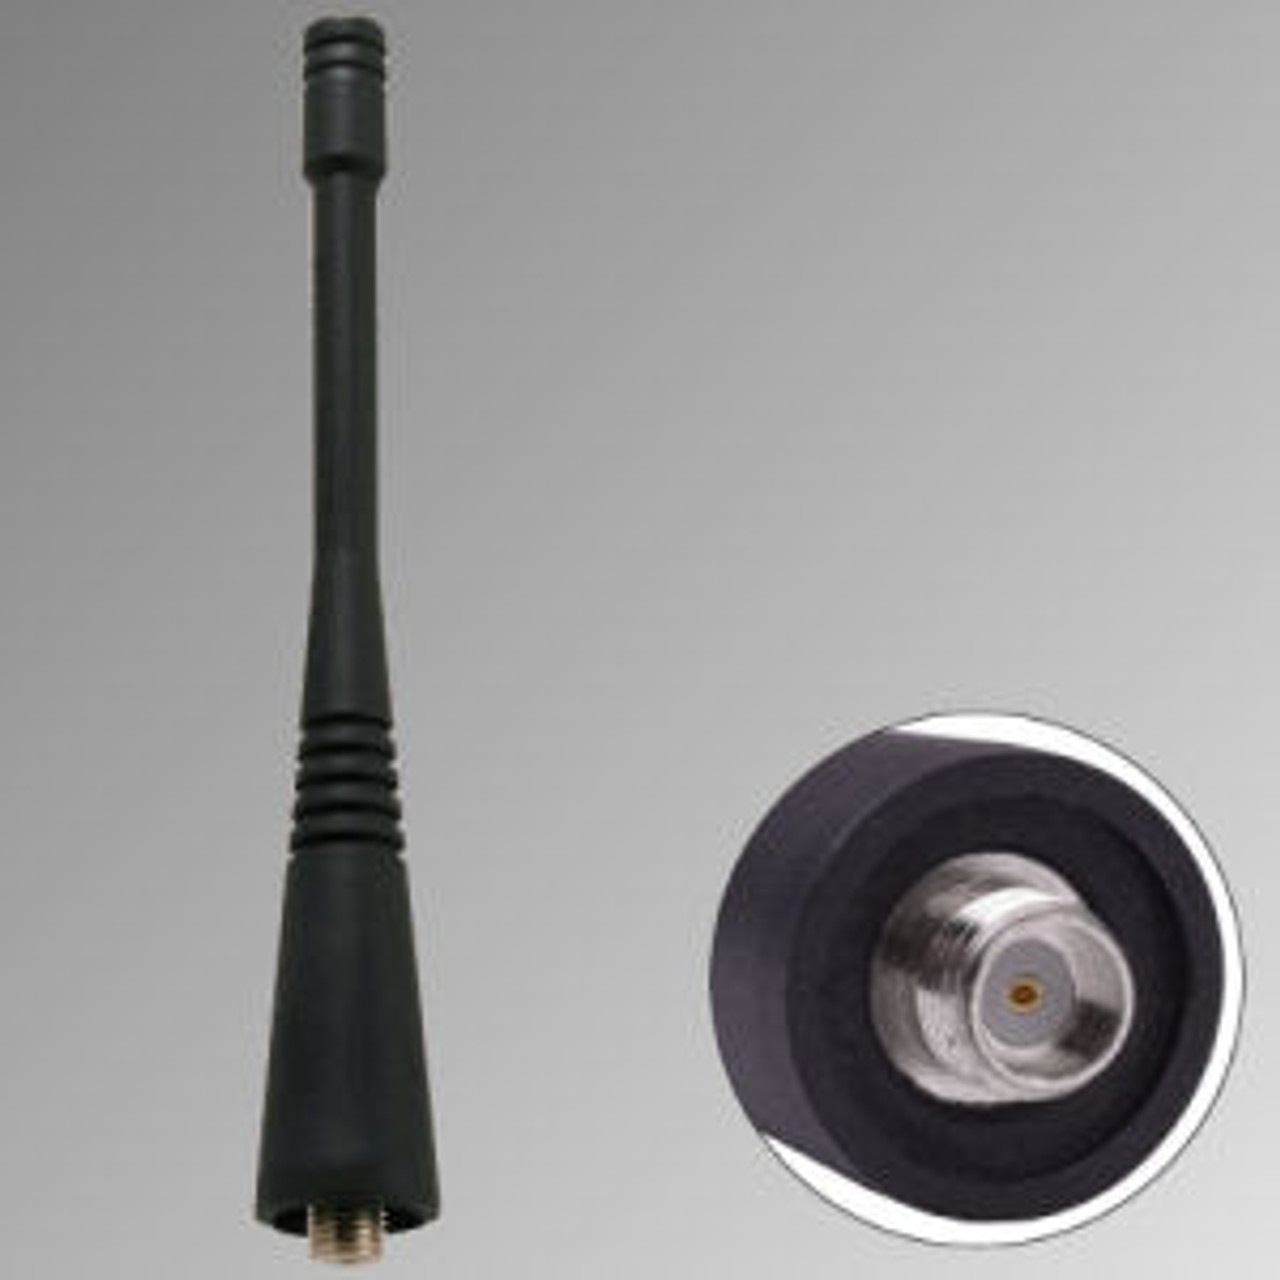 Kenwood NX-410 Antenna - 4", Dual-Band, 698-870 MHz